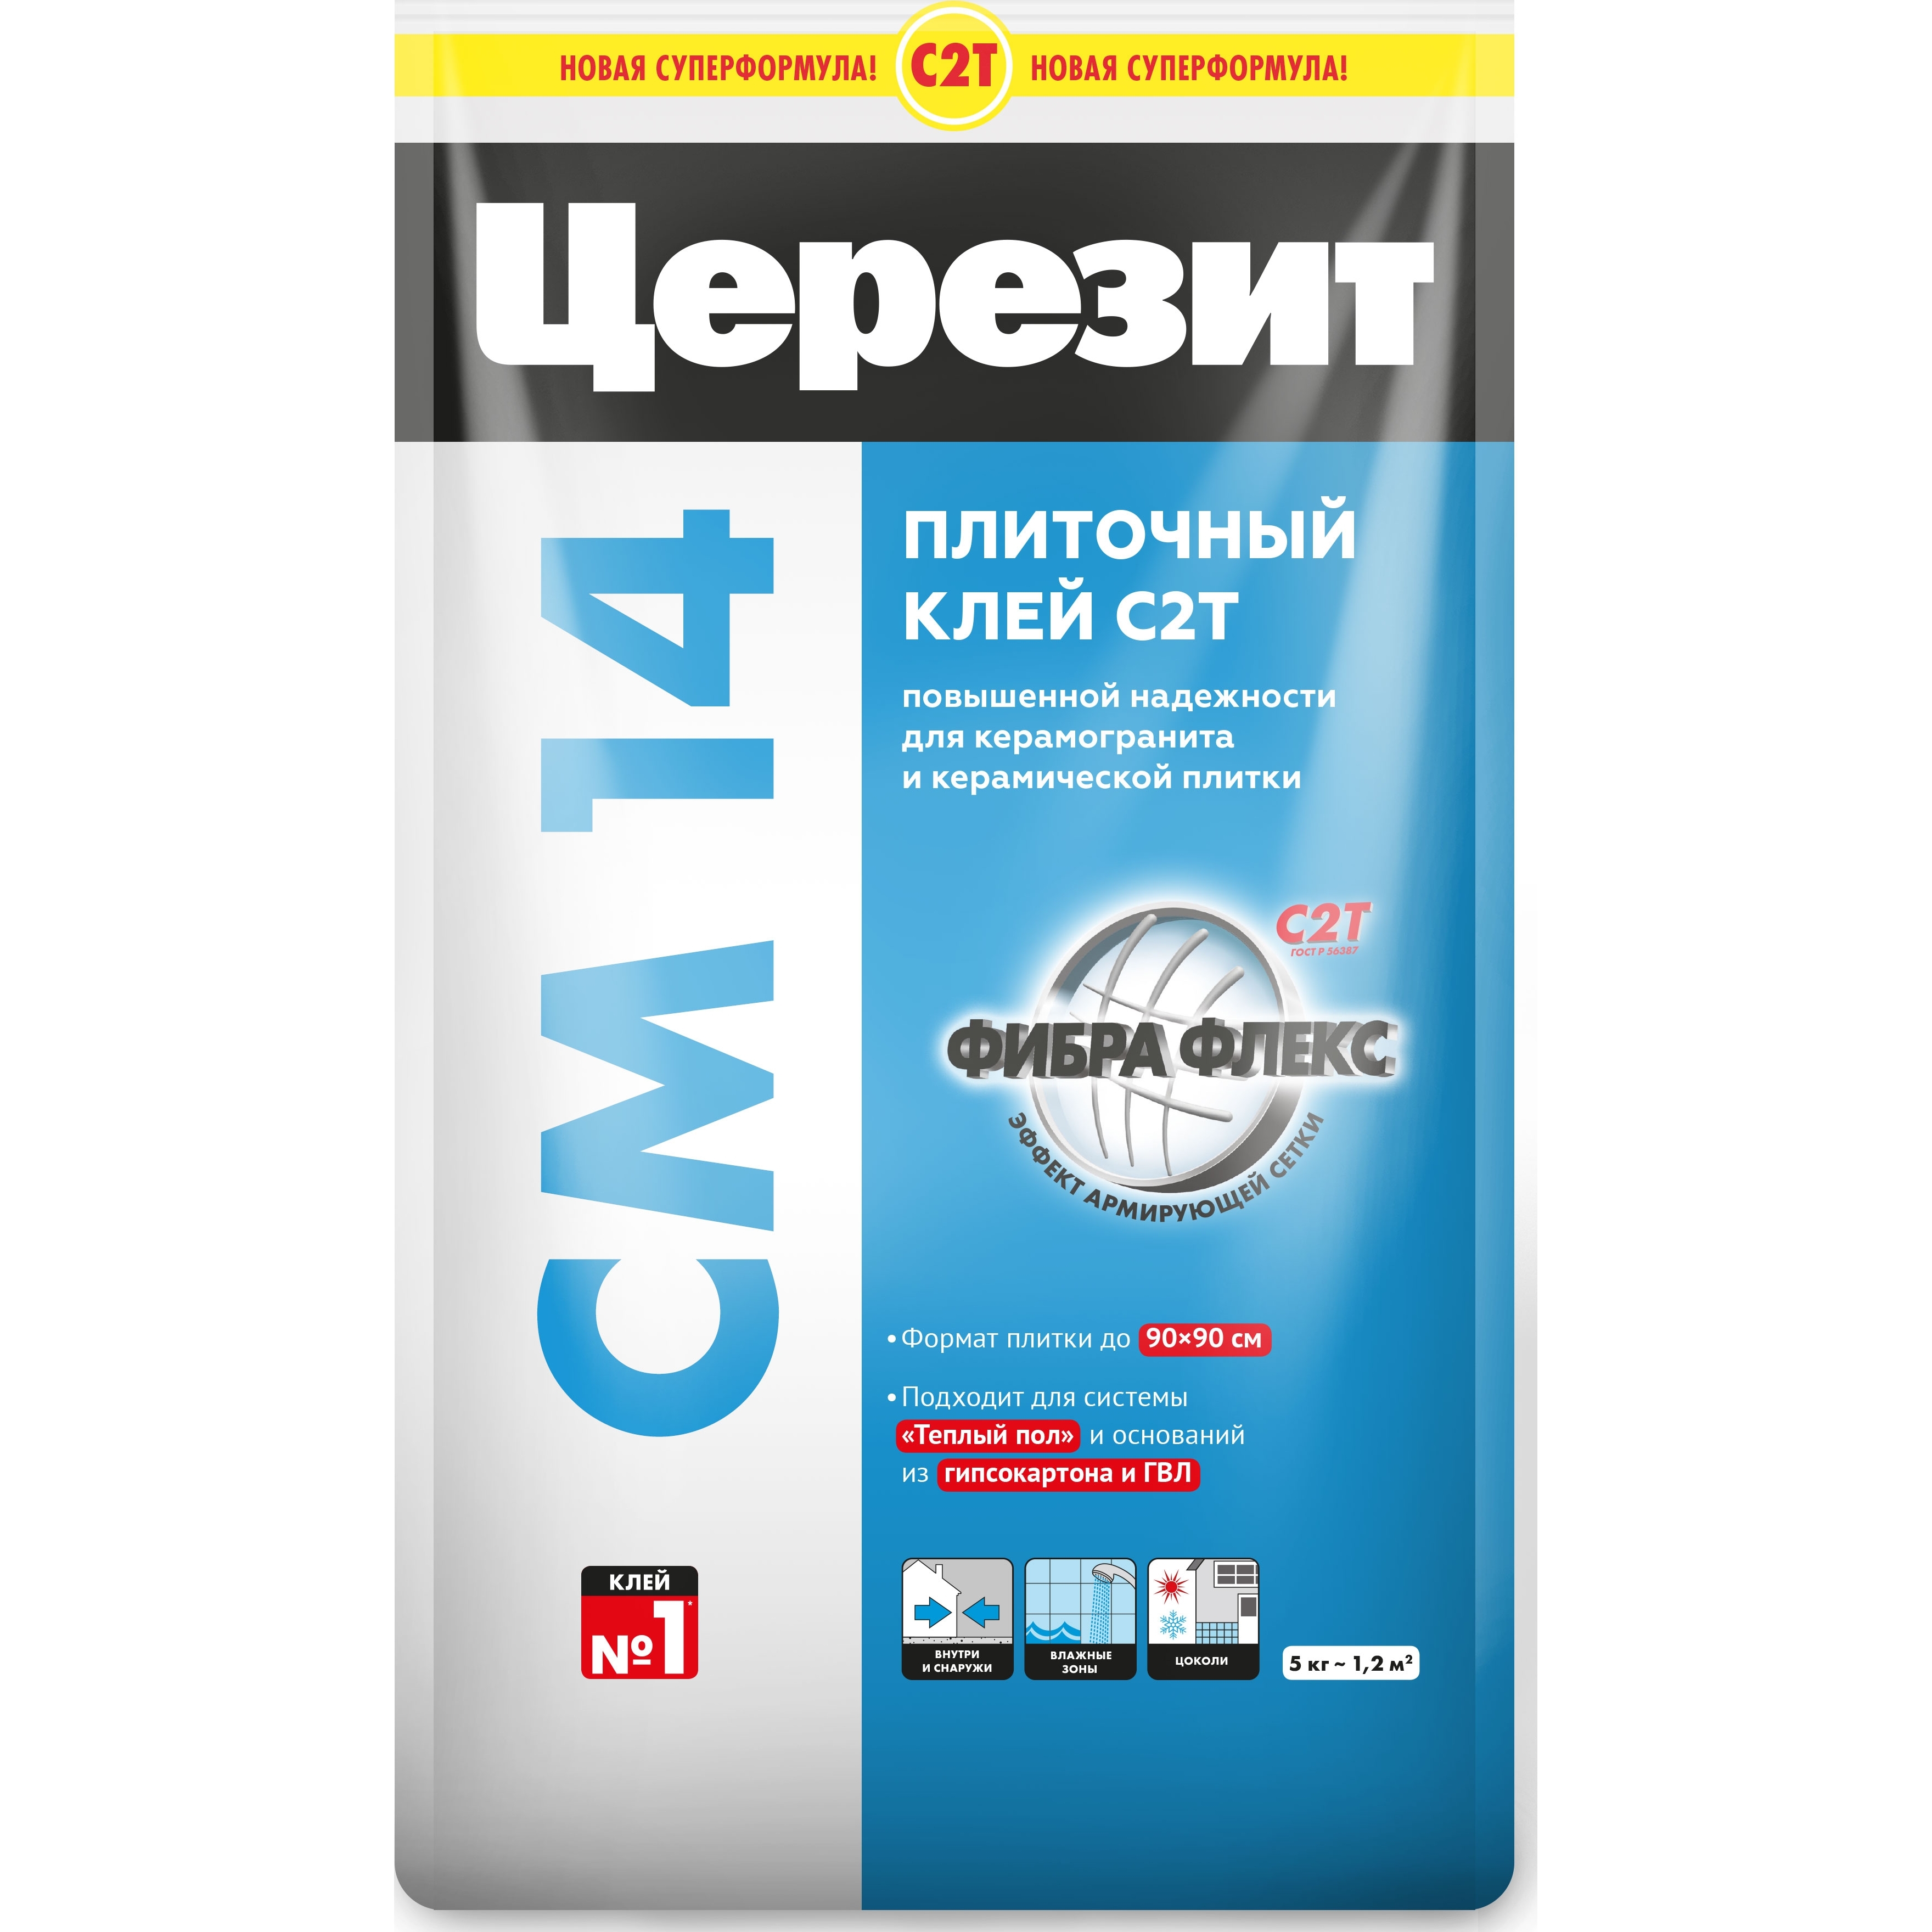 Клей Церезит CМ14 Extra для керамической плитки и керамогранита (для тёплых полов) 5 кг Арт.2092164